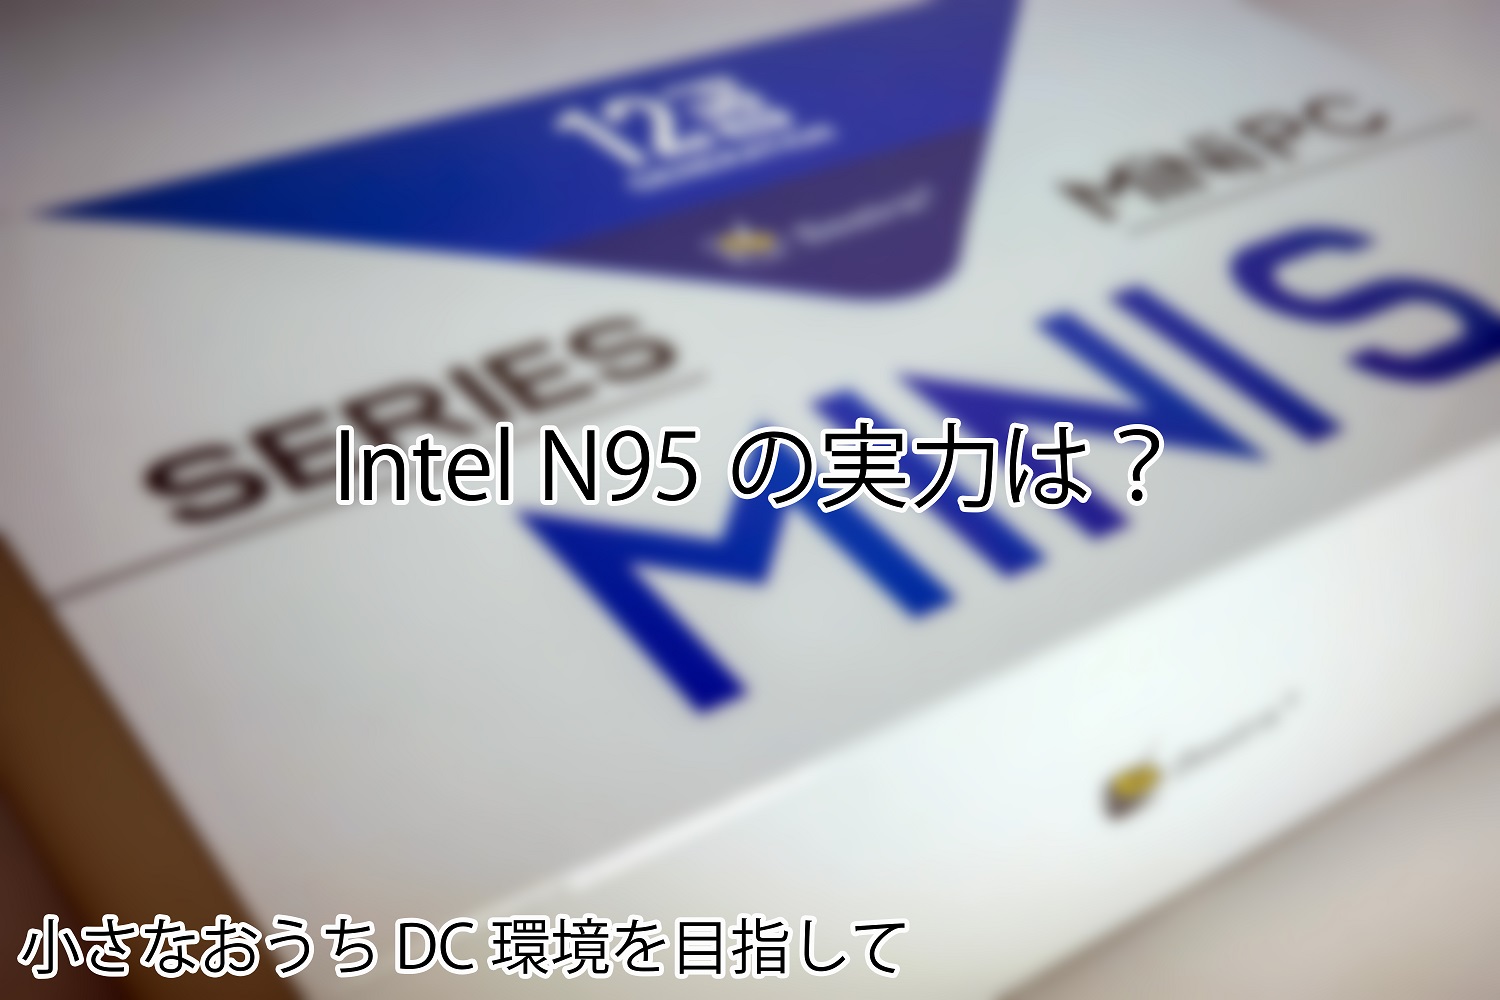 Intel N95とIntel N100の違いって何だろう？Beelink Mini S12で試す